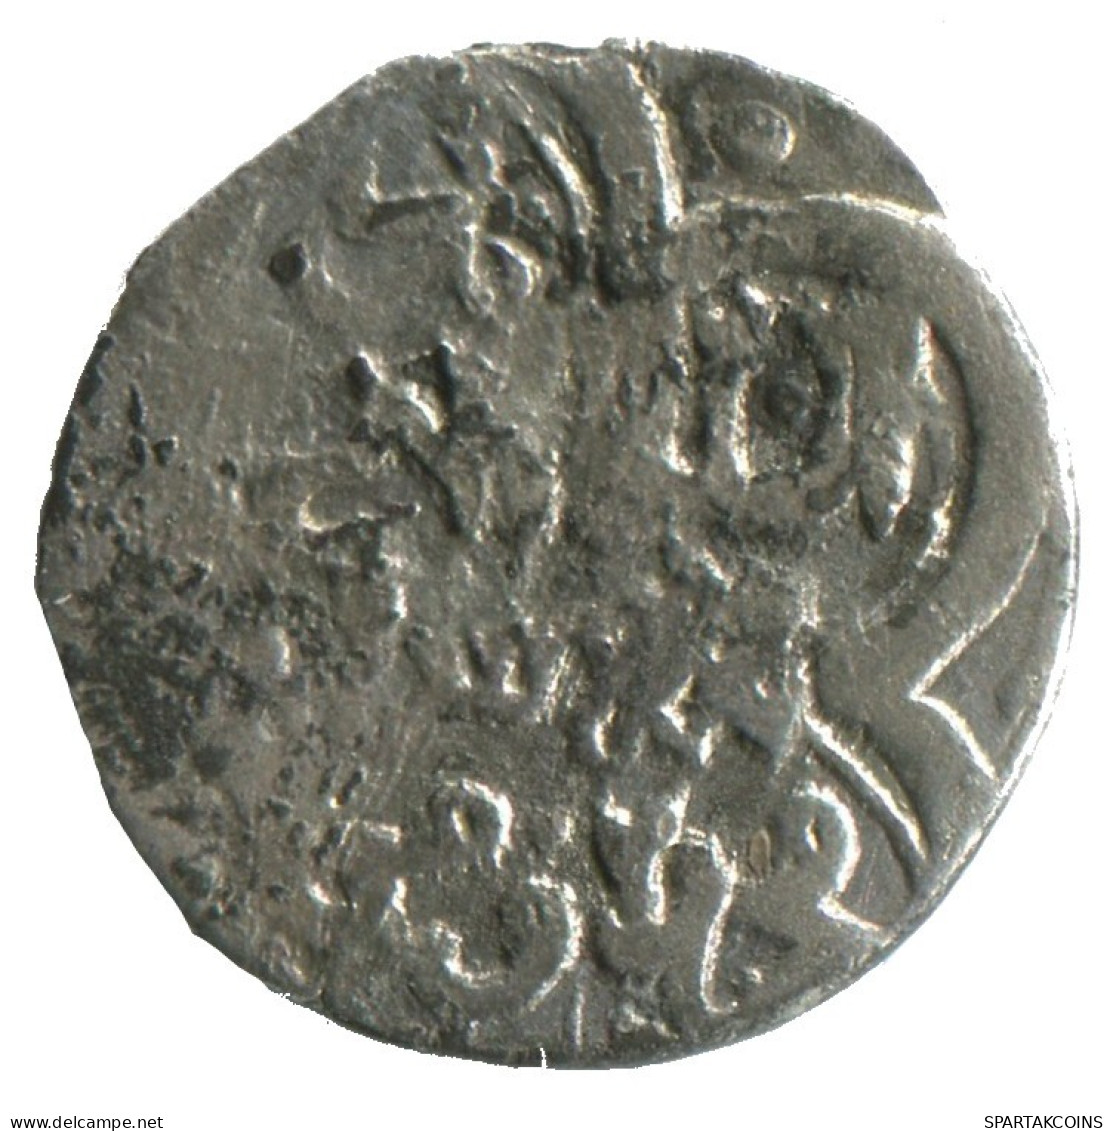 GOLDEN HORDE Silver Dirham Medieval Islamic Coin 1.4g/16mm #NNN2014.8.F.A - Islamic